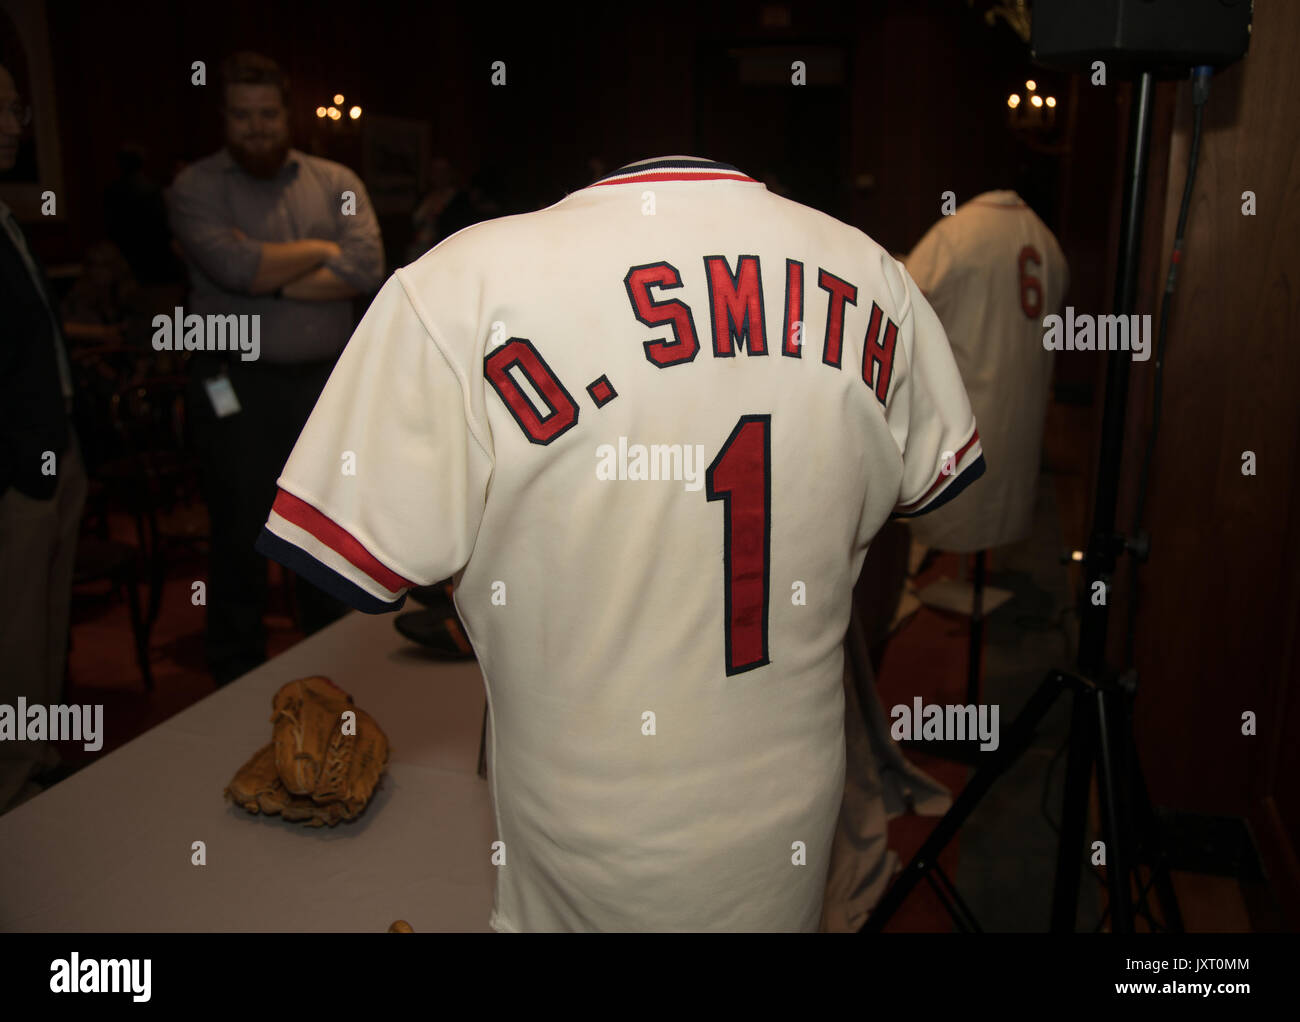 ozzie smith baseball jersey